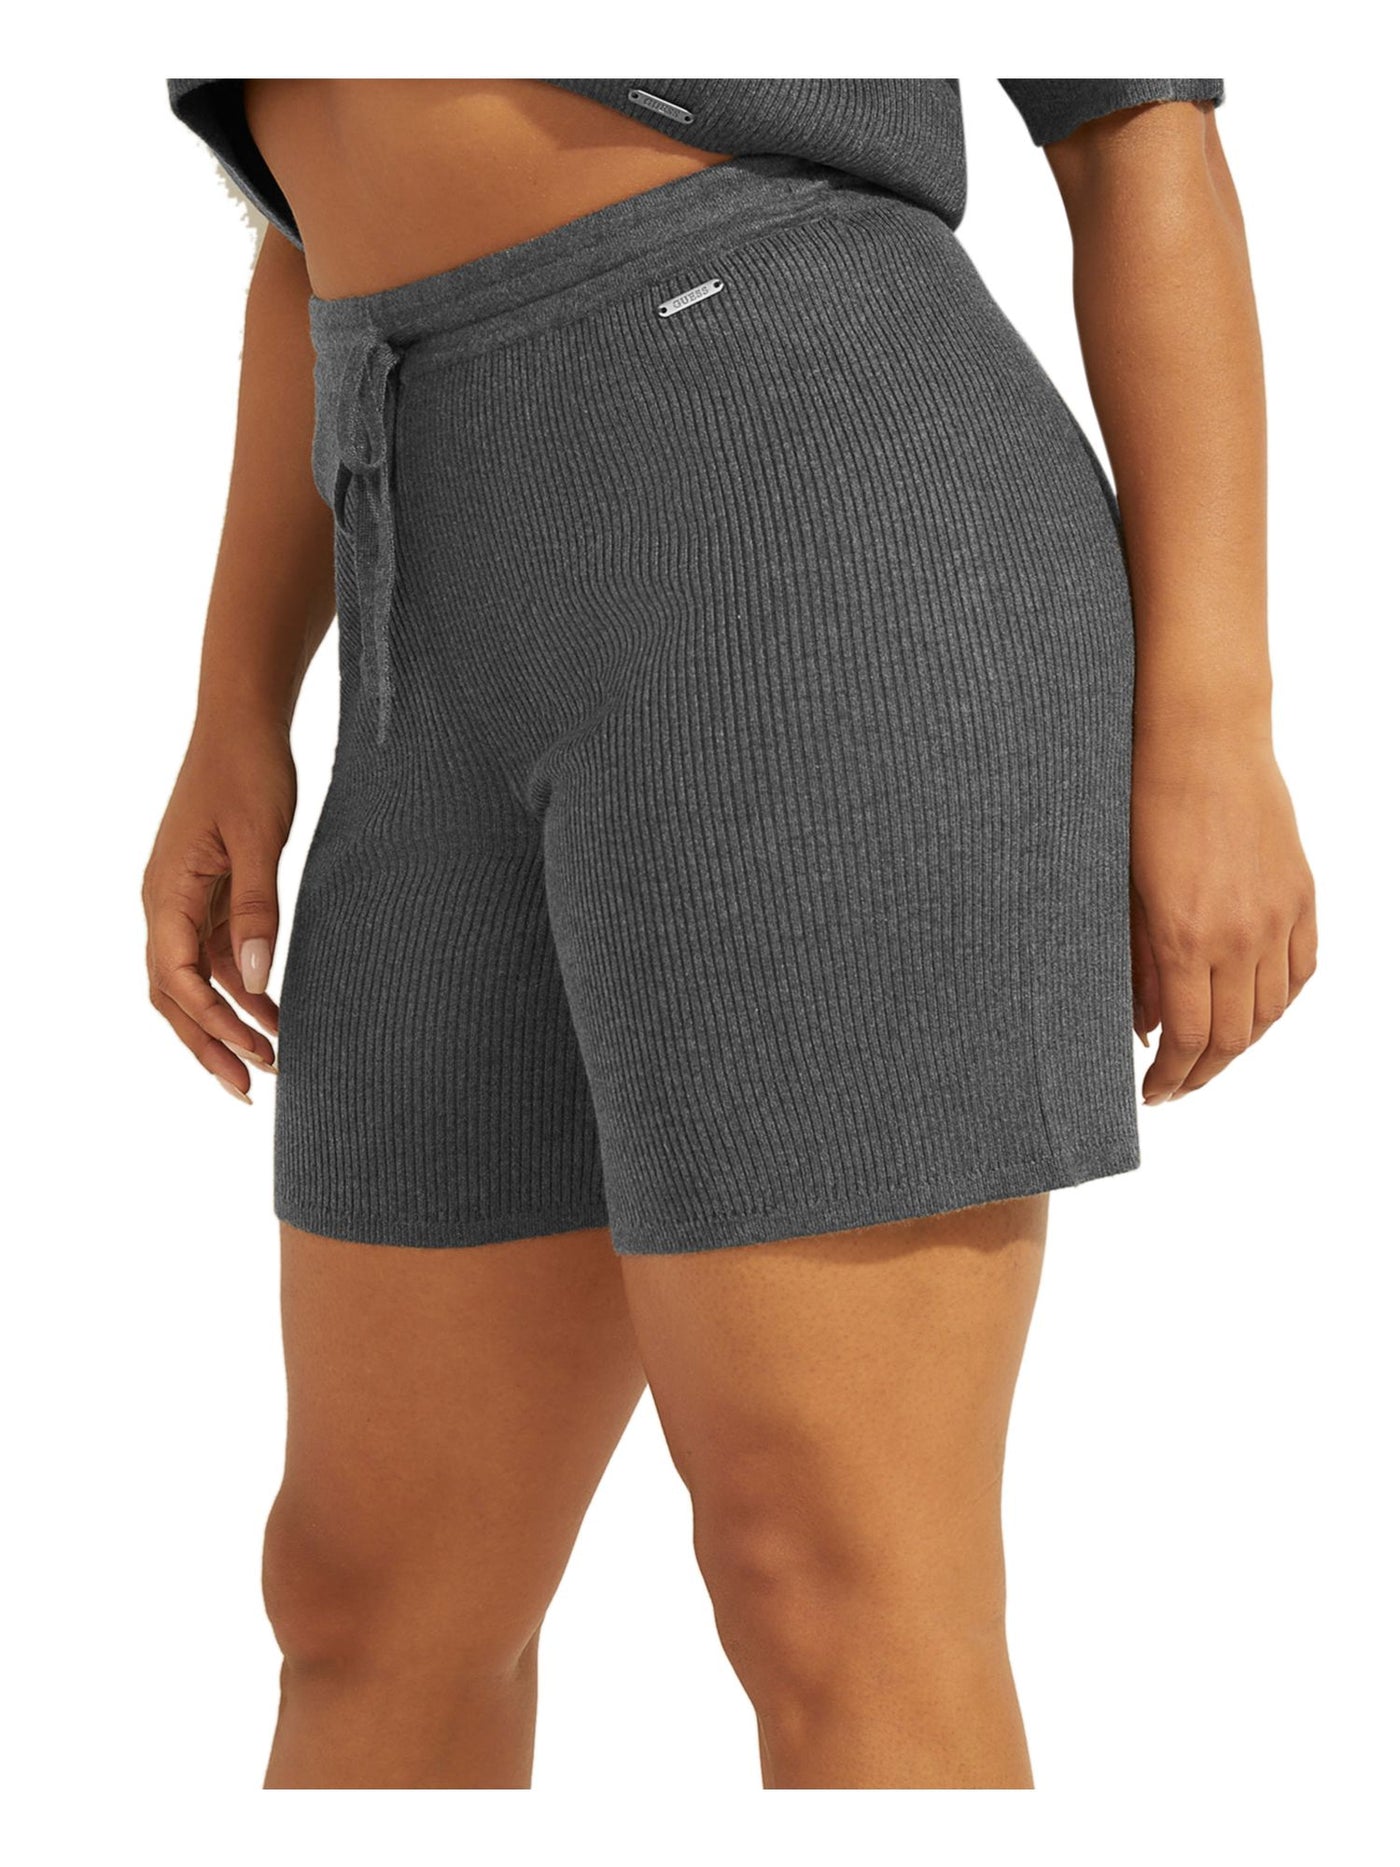 GUESS Womens Gray Ribbed Drawstring Waist Pull-on Style Bermuda Shorts XL